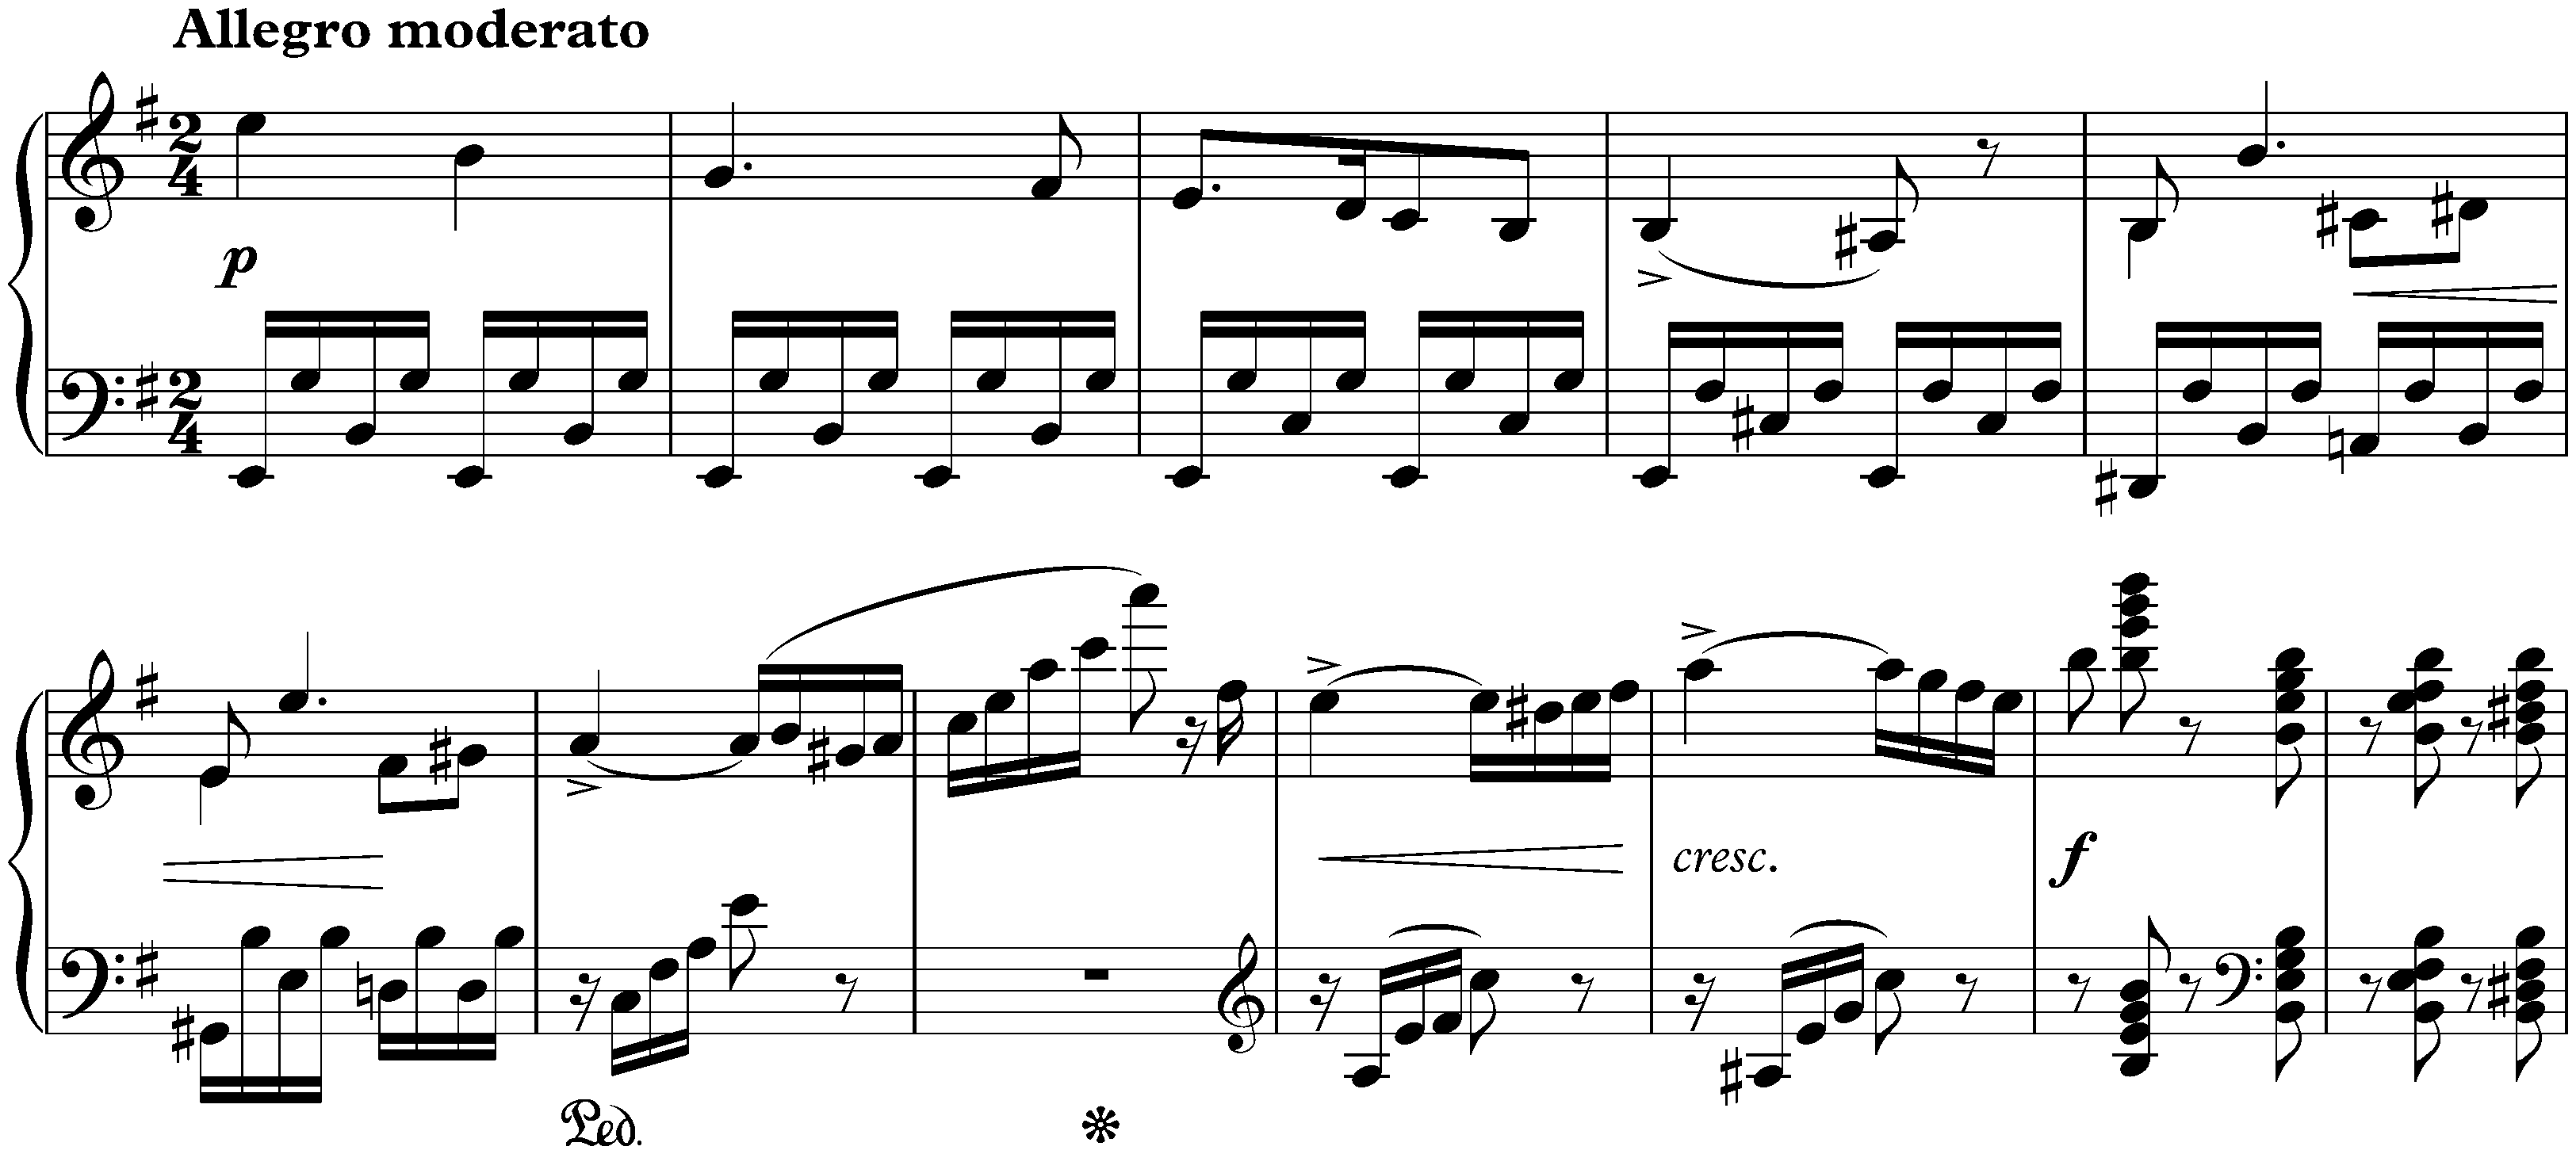 Sonata in E minor, op. 7; 1. Allegro moderato